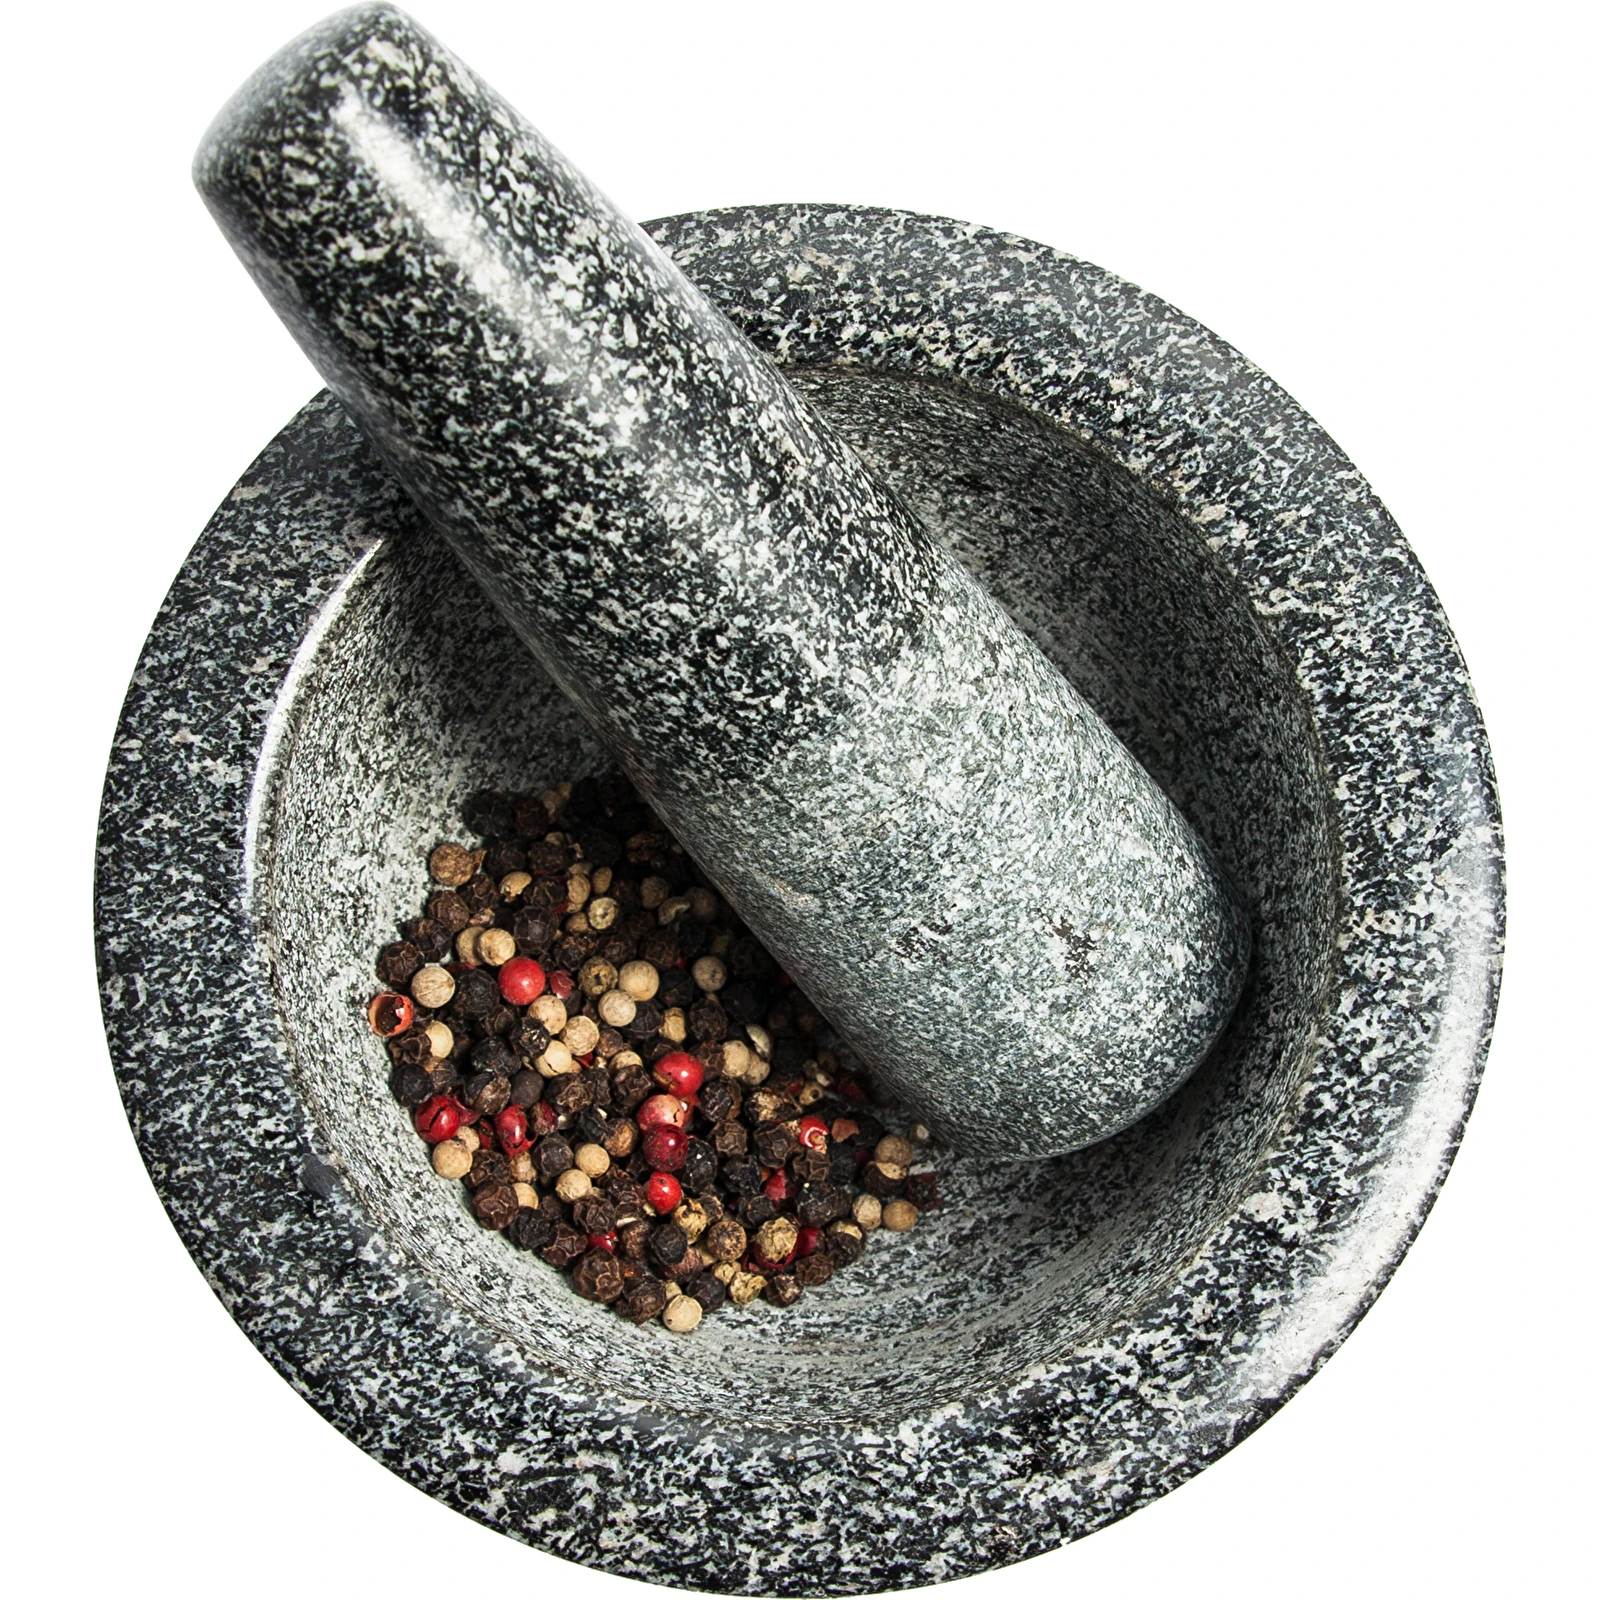 Granite mortar and pestle – stone mortar